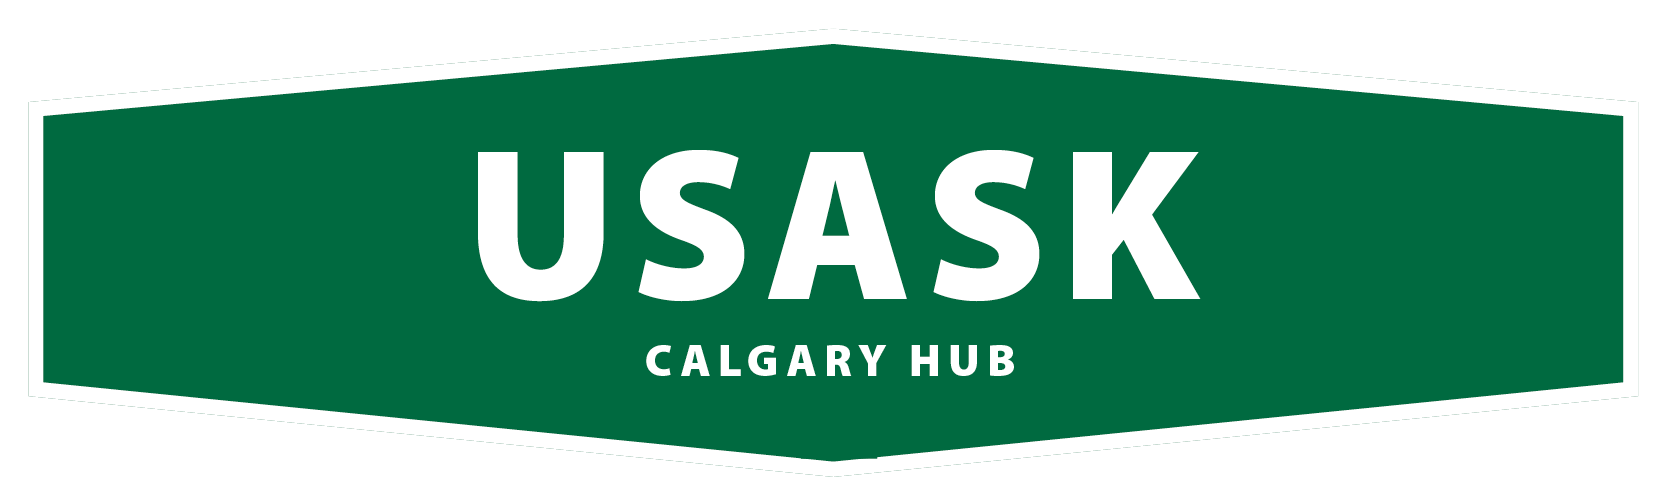 usask-calgary-hub-sign.png